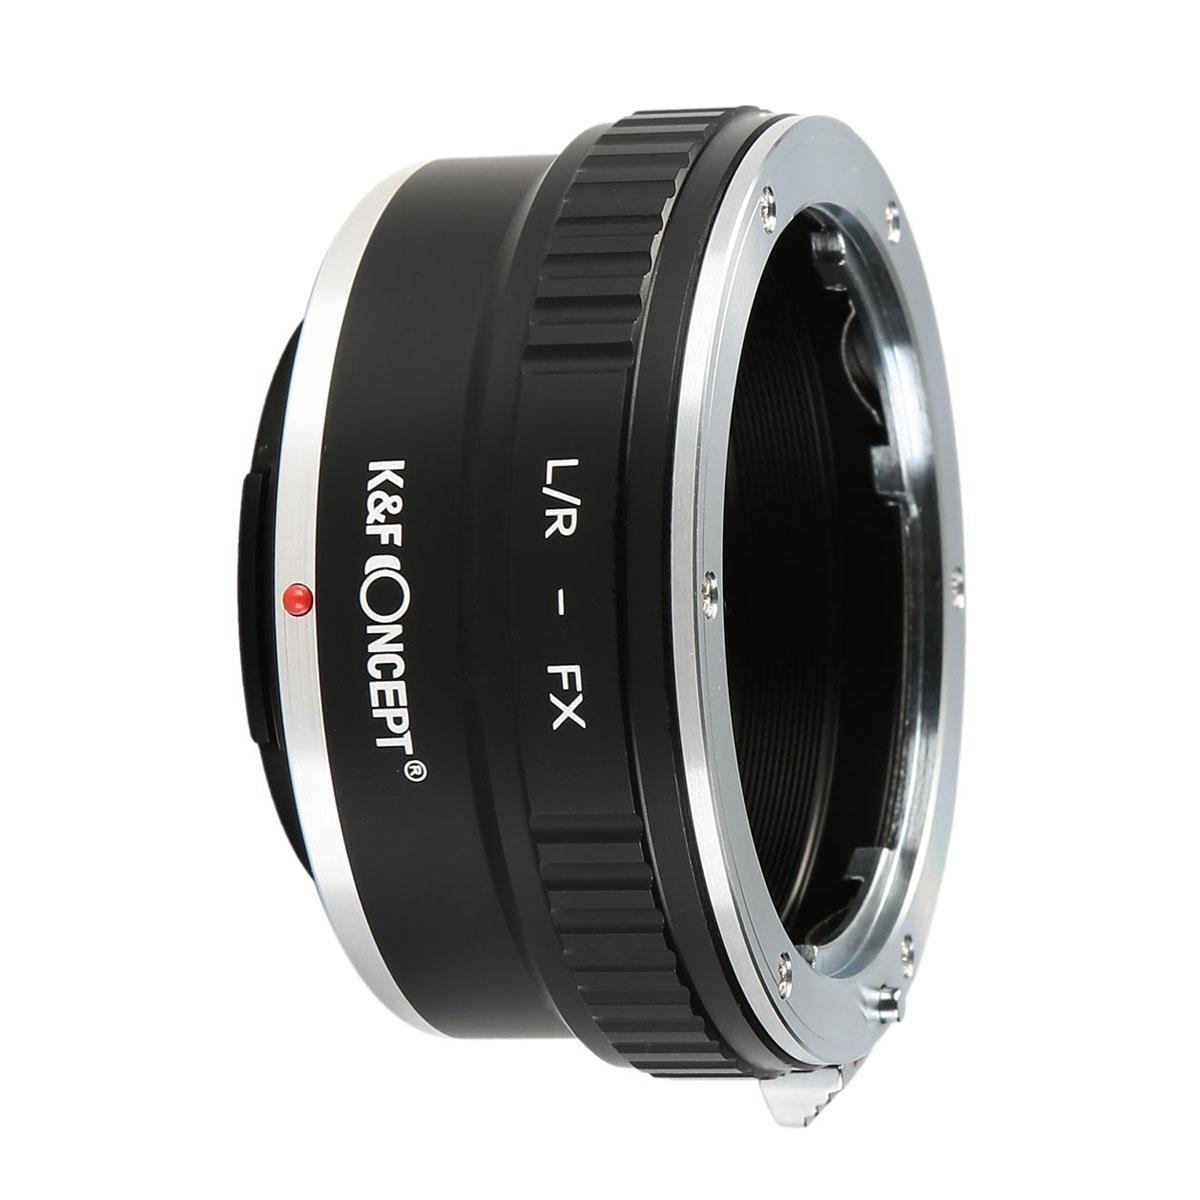 Leica R レンズマウントアダプターのFuji X カメラ LR-FX - K&F